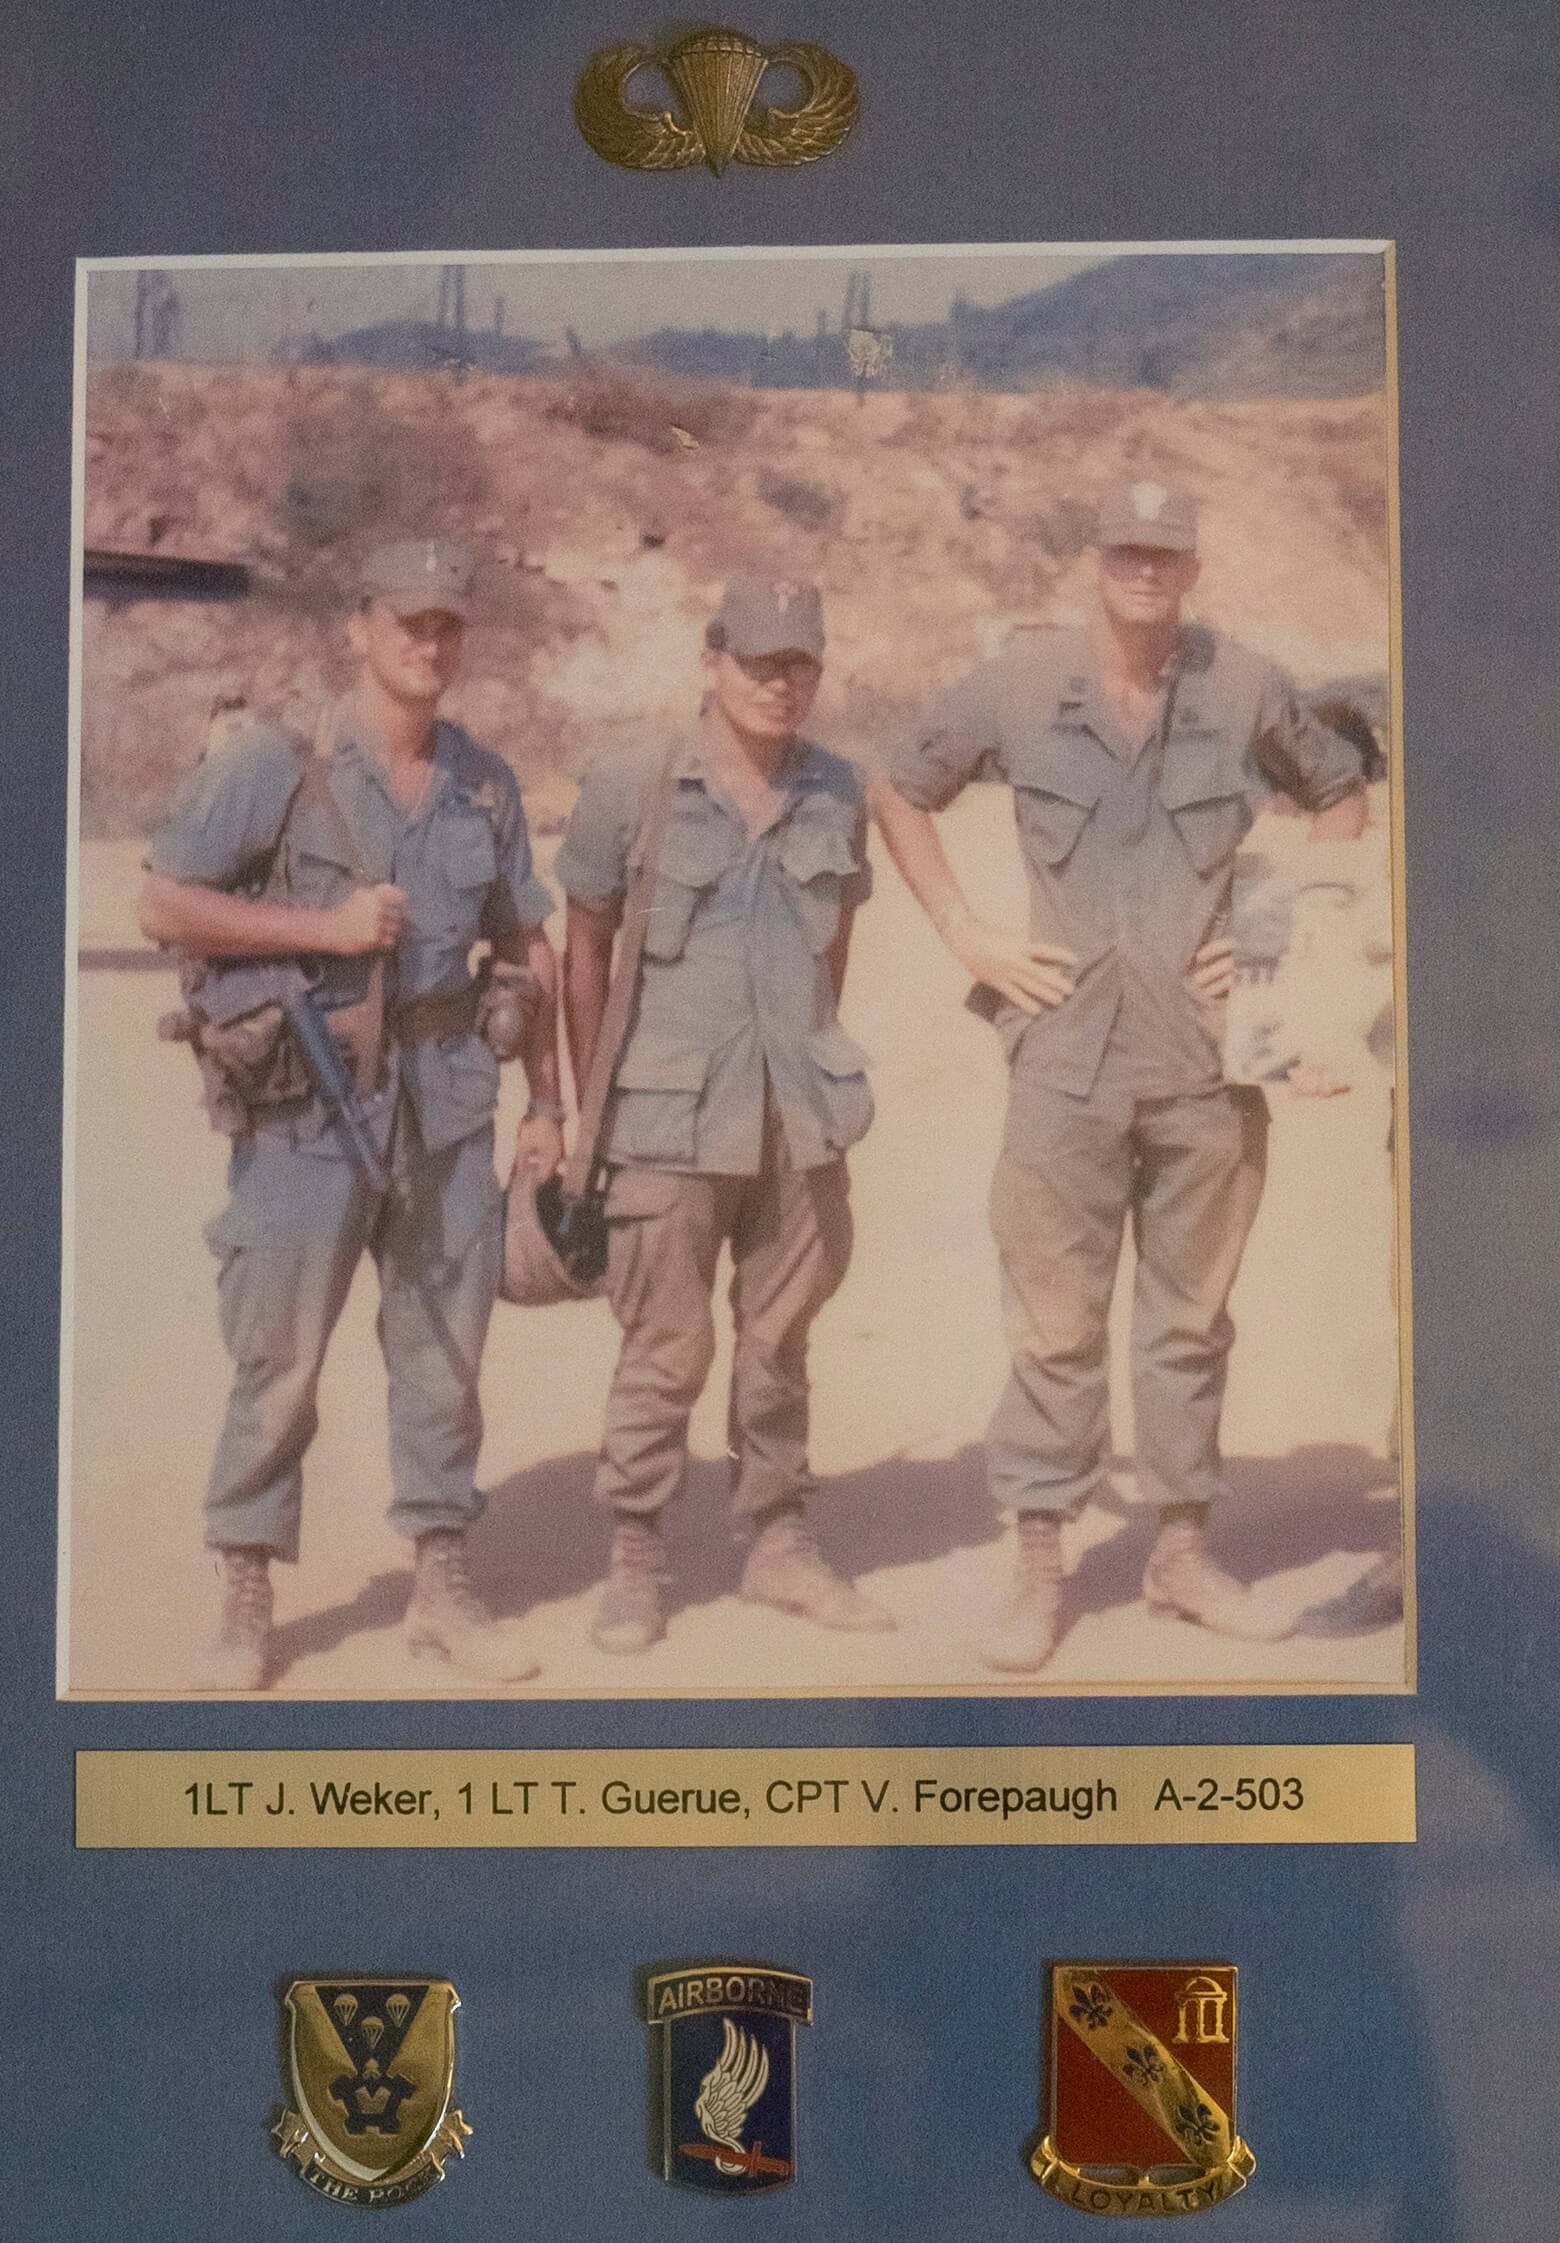 Vietnam War photo of three soldiers